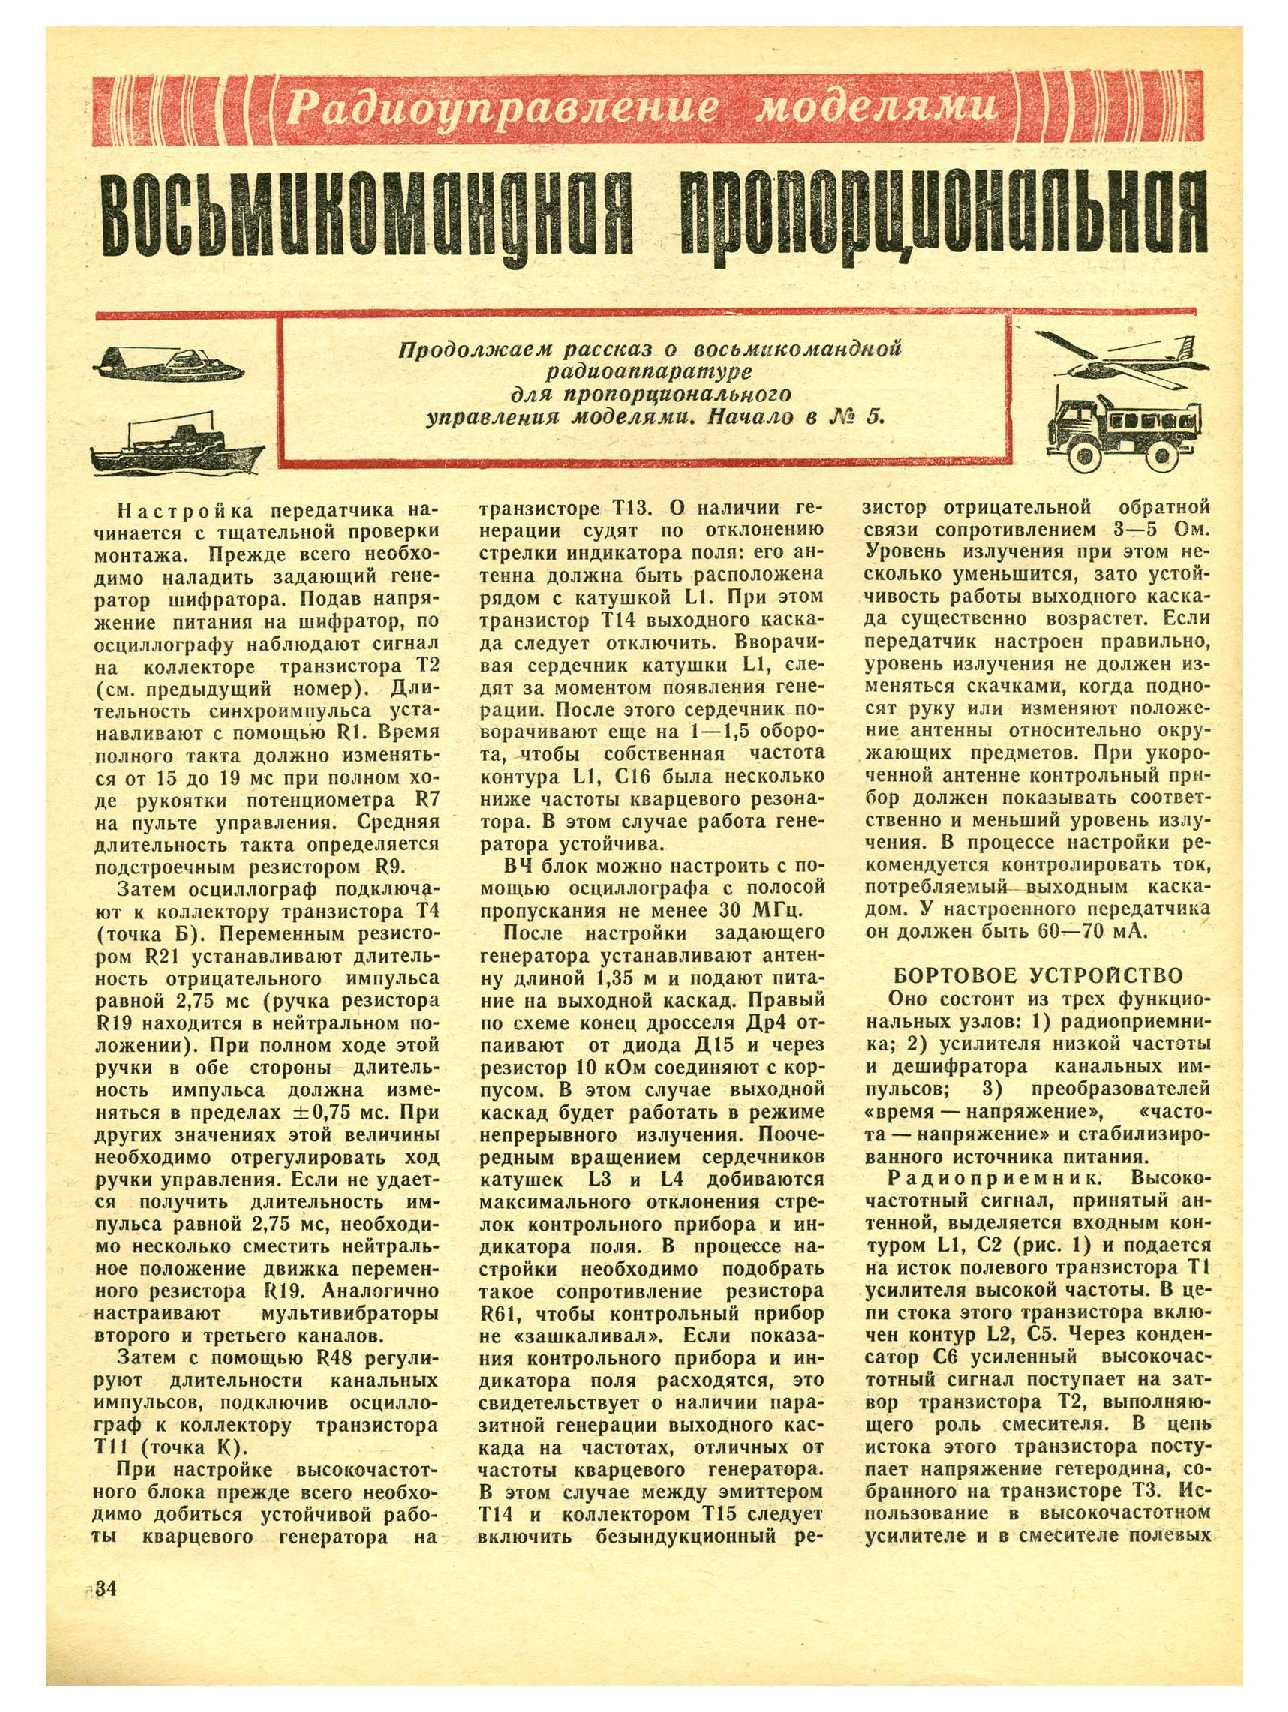 МК 6, 1976, 34 c.